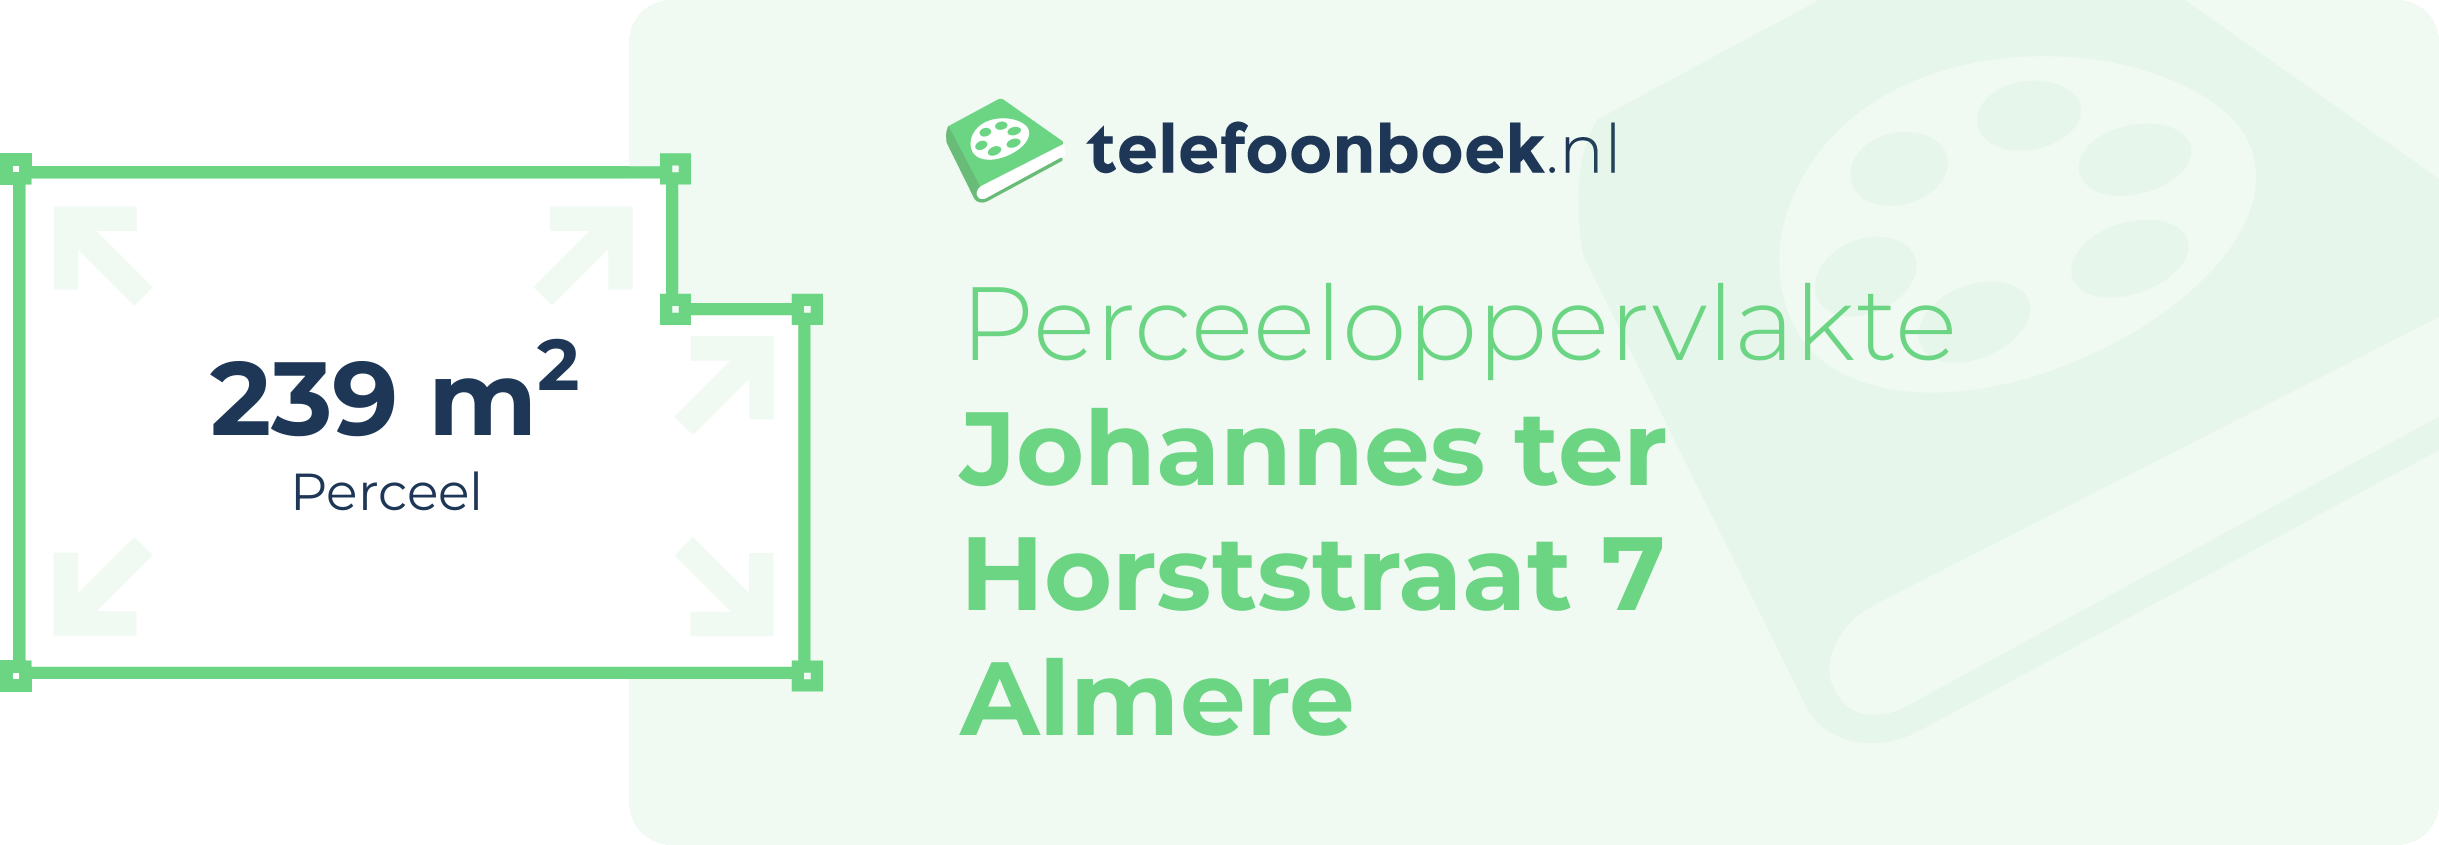 Perceeloppervlakte Johannes Ter Horststraat 7 Almere